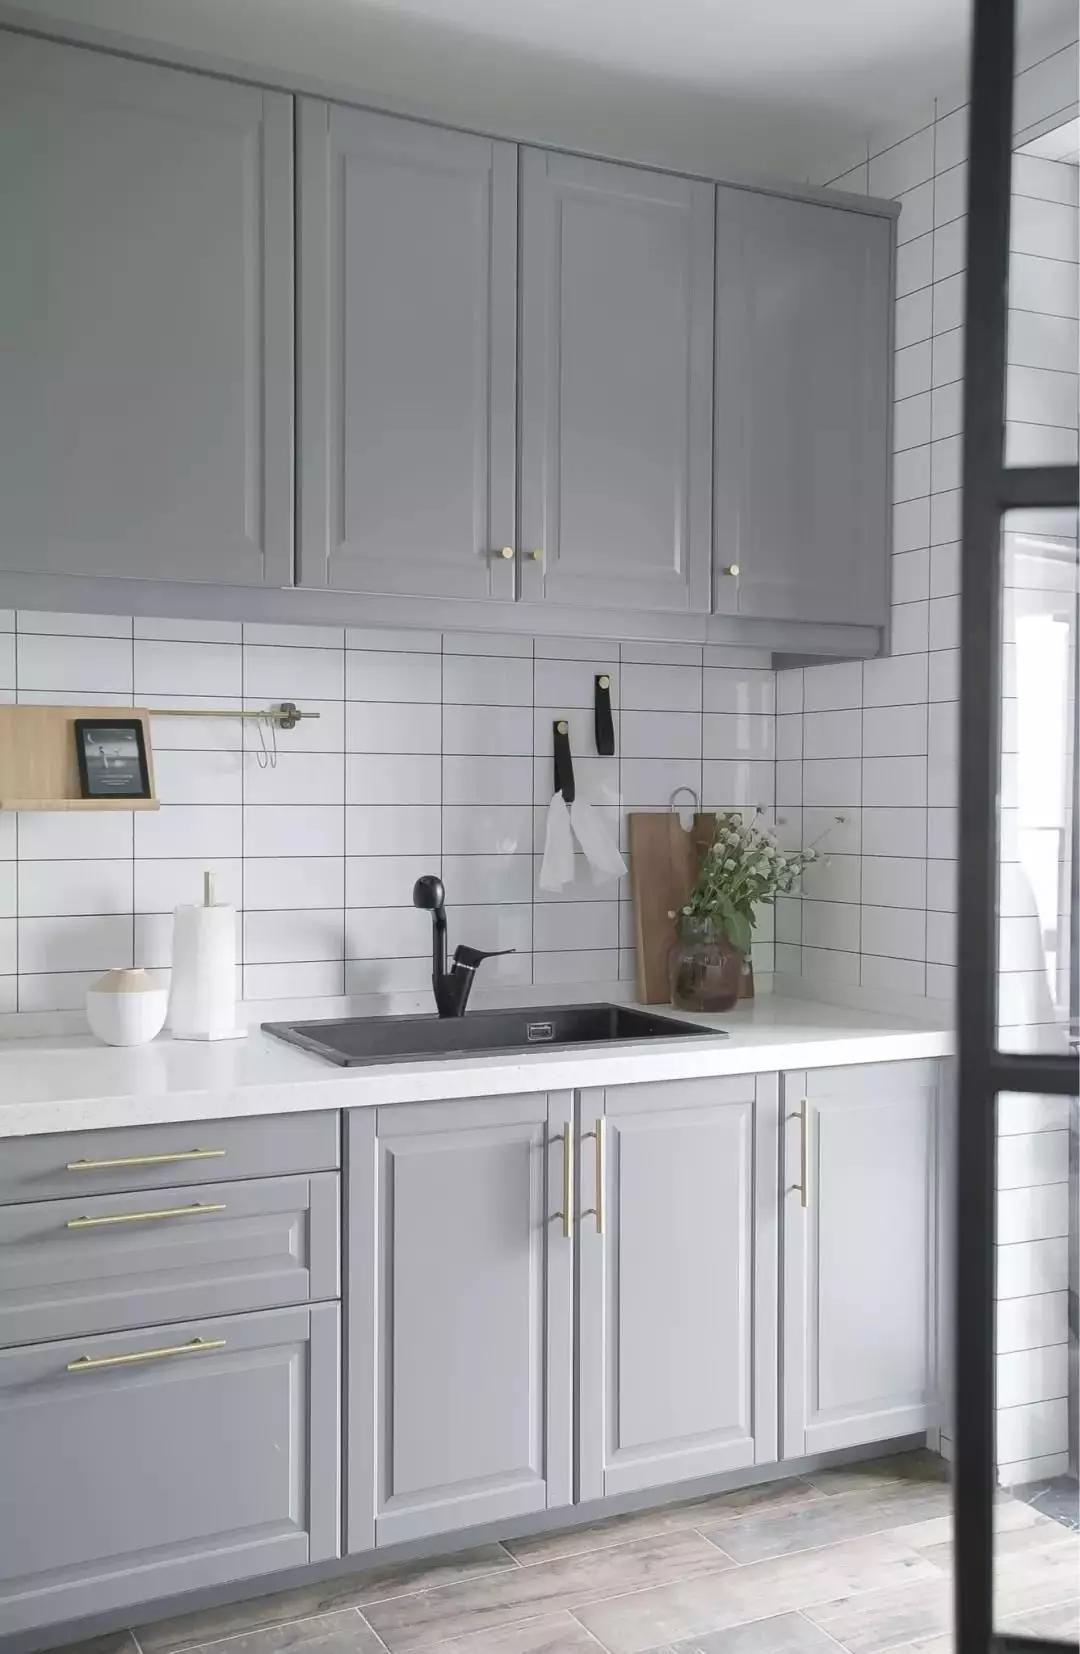 厨房地面拼贴木纹砖,墙面采用文艺的白色瓷砖,灰色橱柜金色拉手